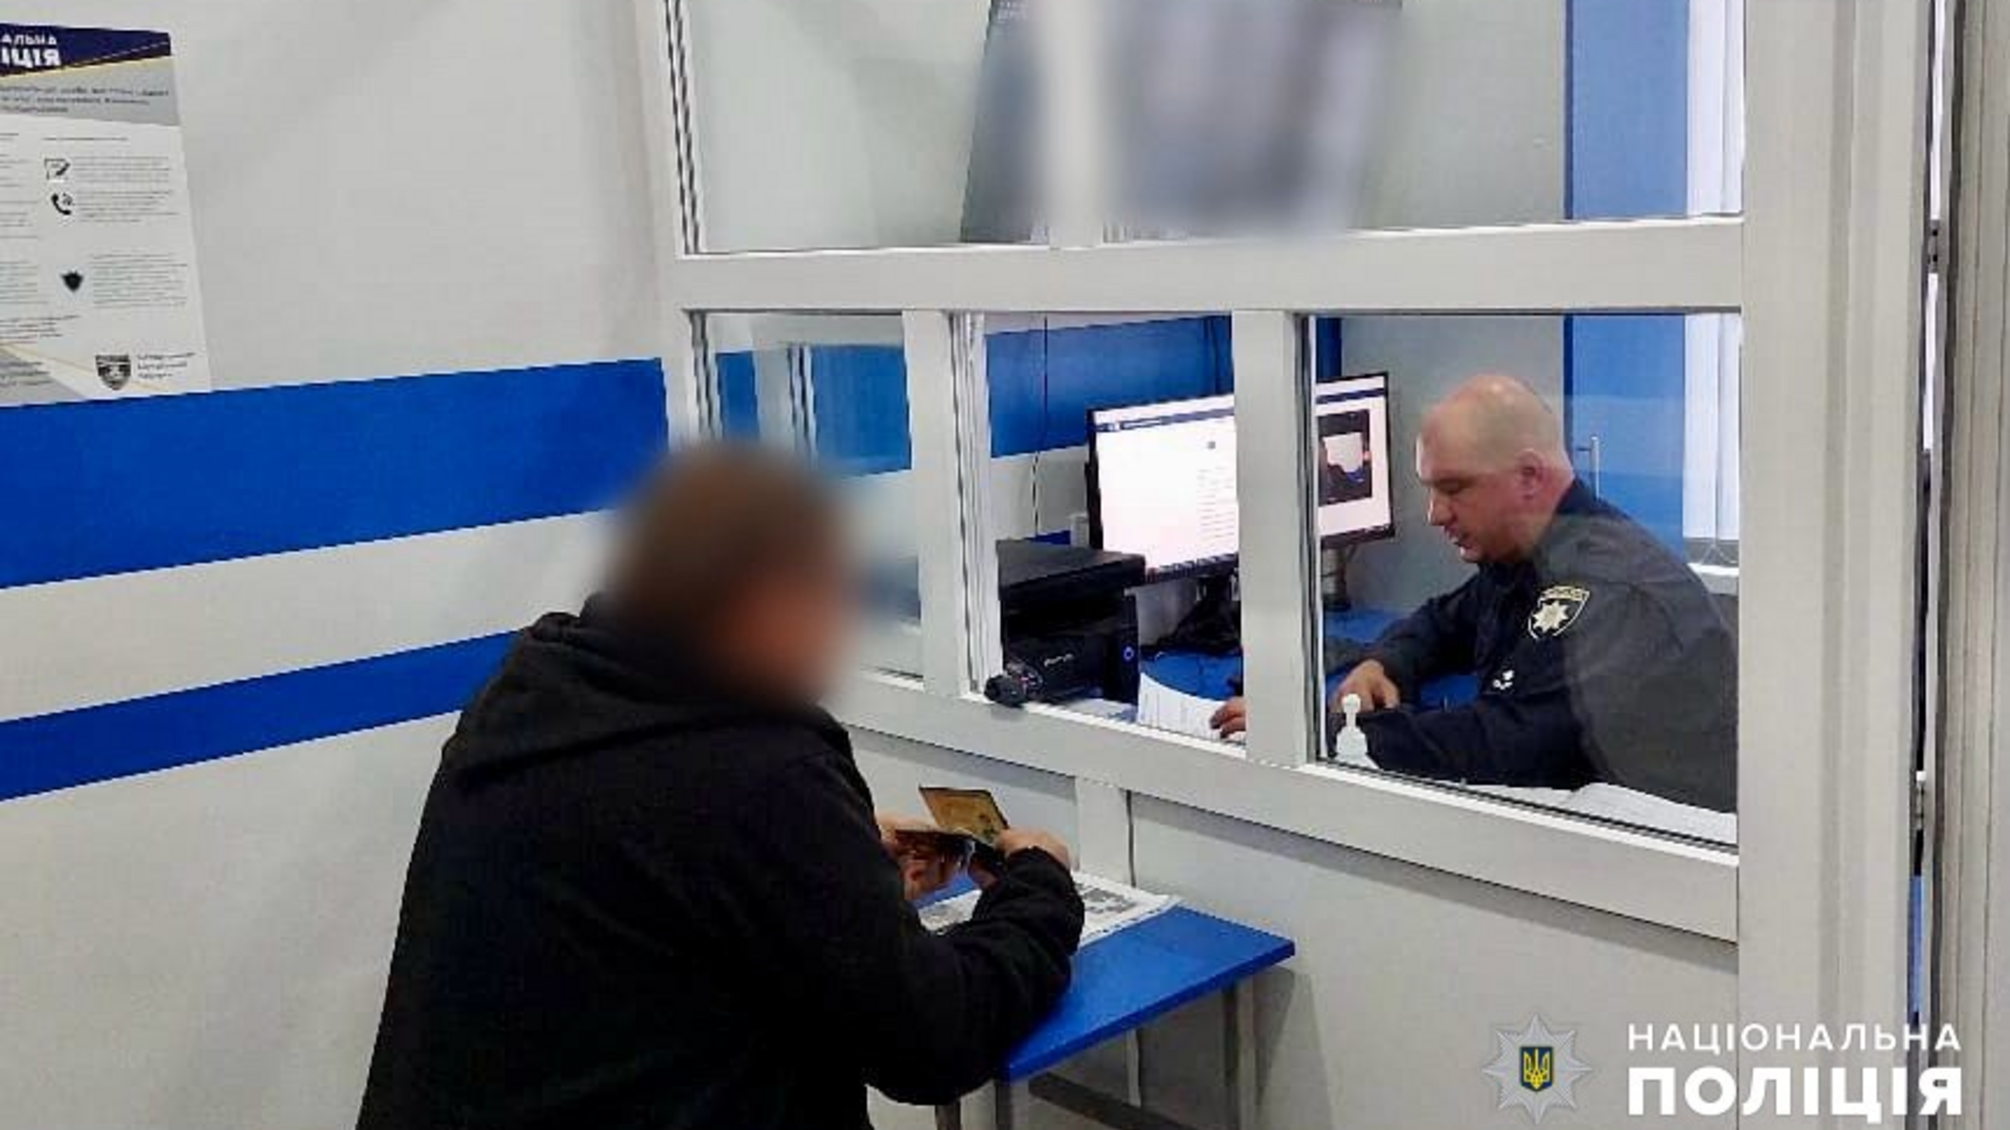 5,2 тис. доларів за квиток у Молдову: на Одещині викрили організатора незаконного переправлення ухилянтів